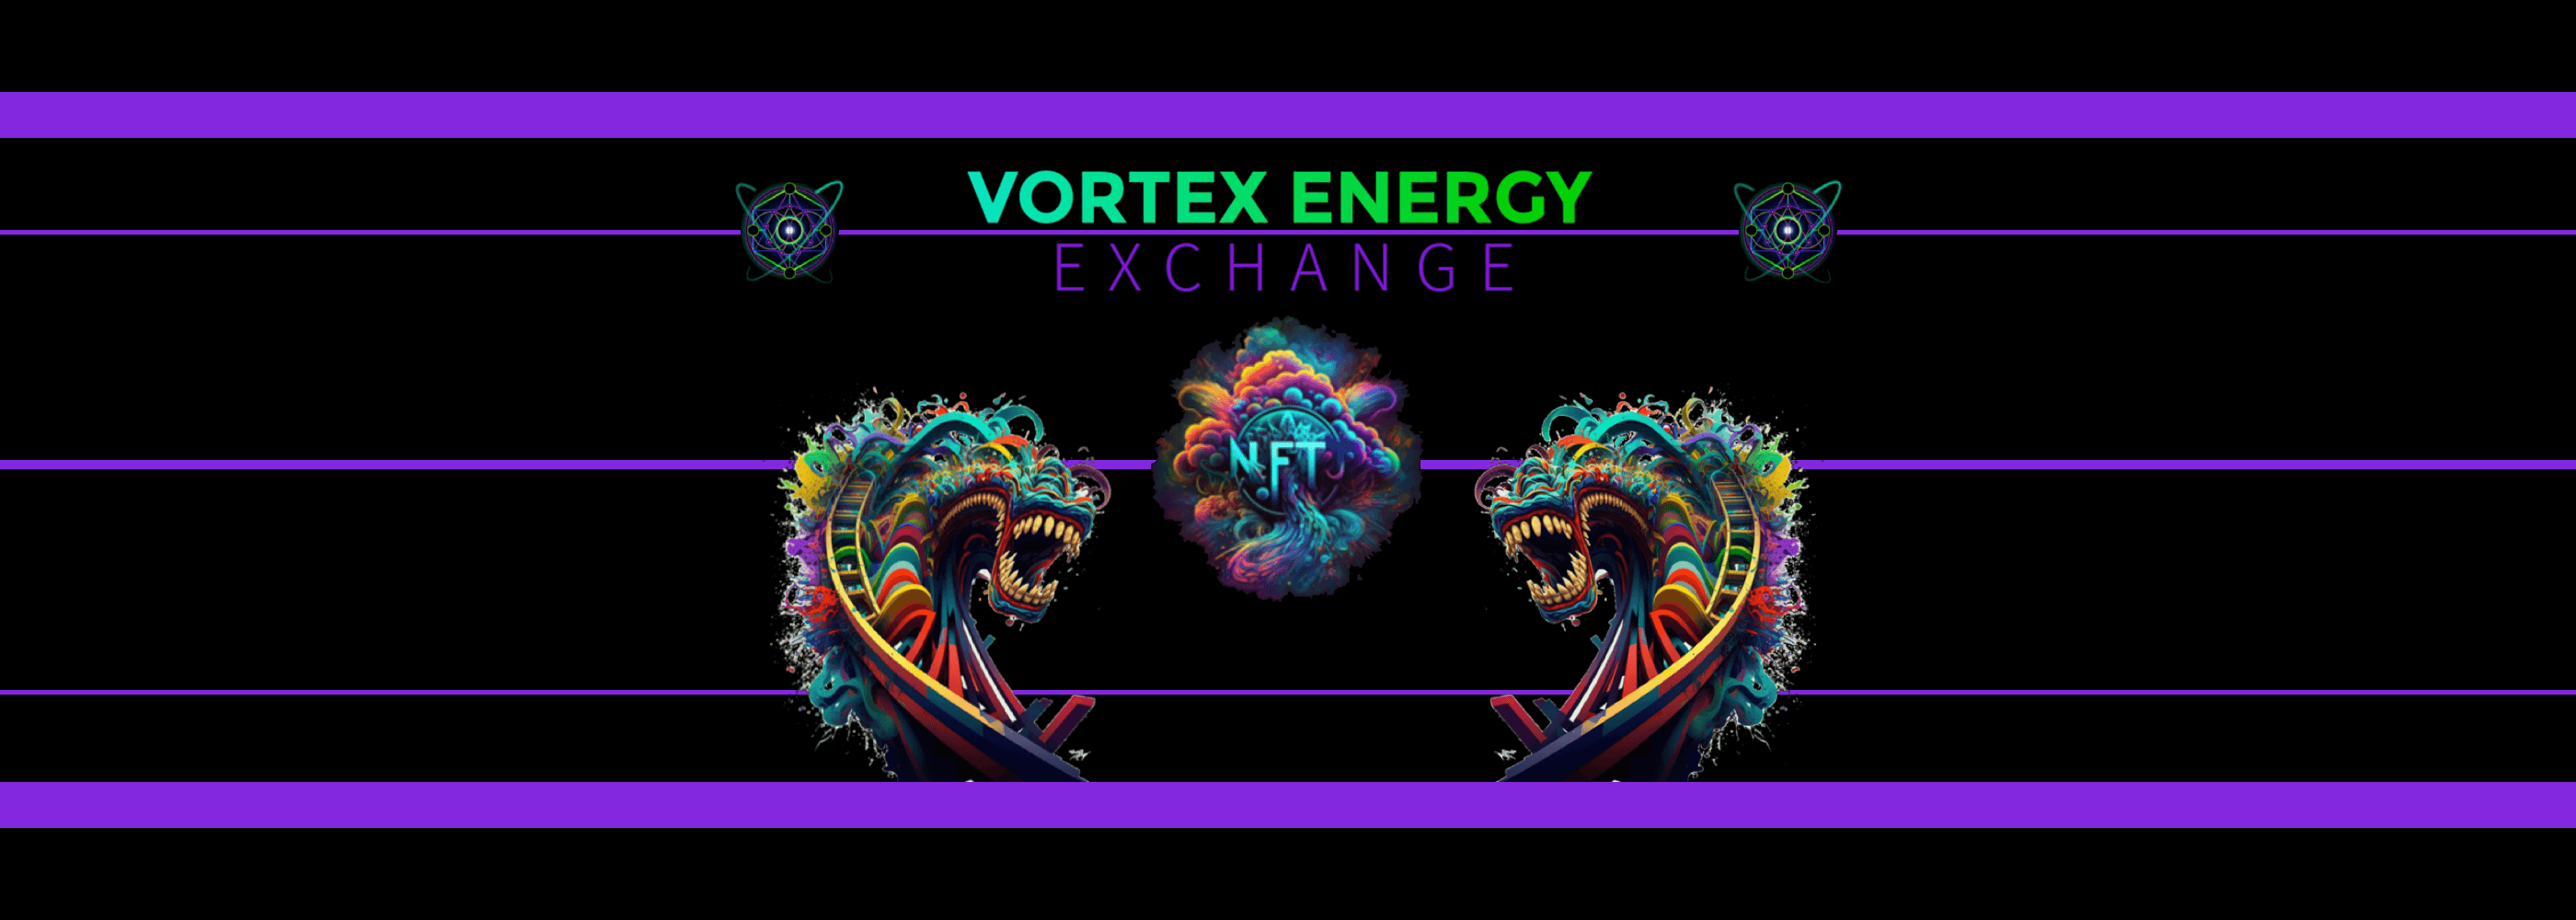 Vortex_Energy_Exchange 배너